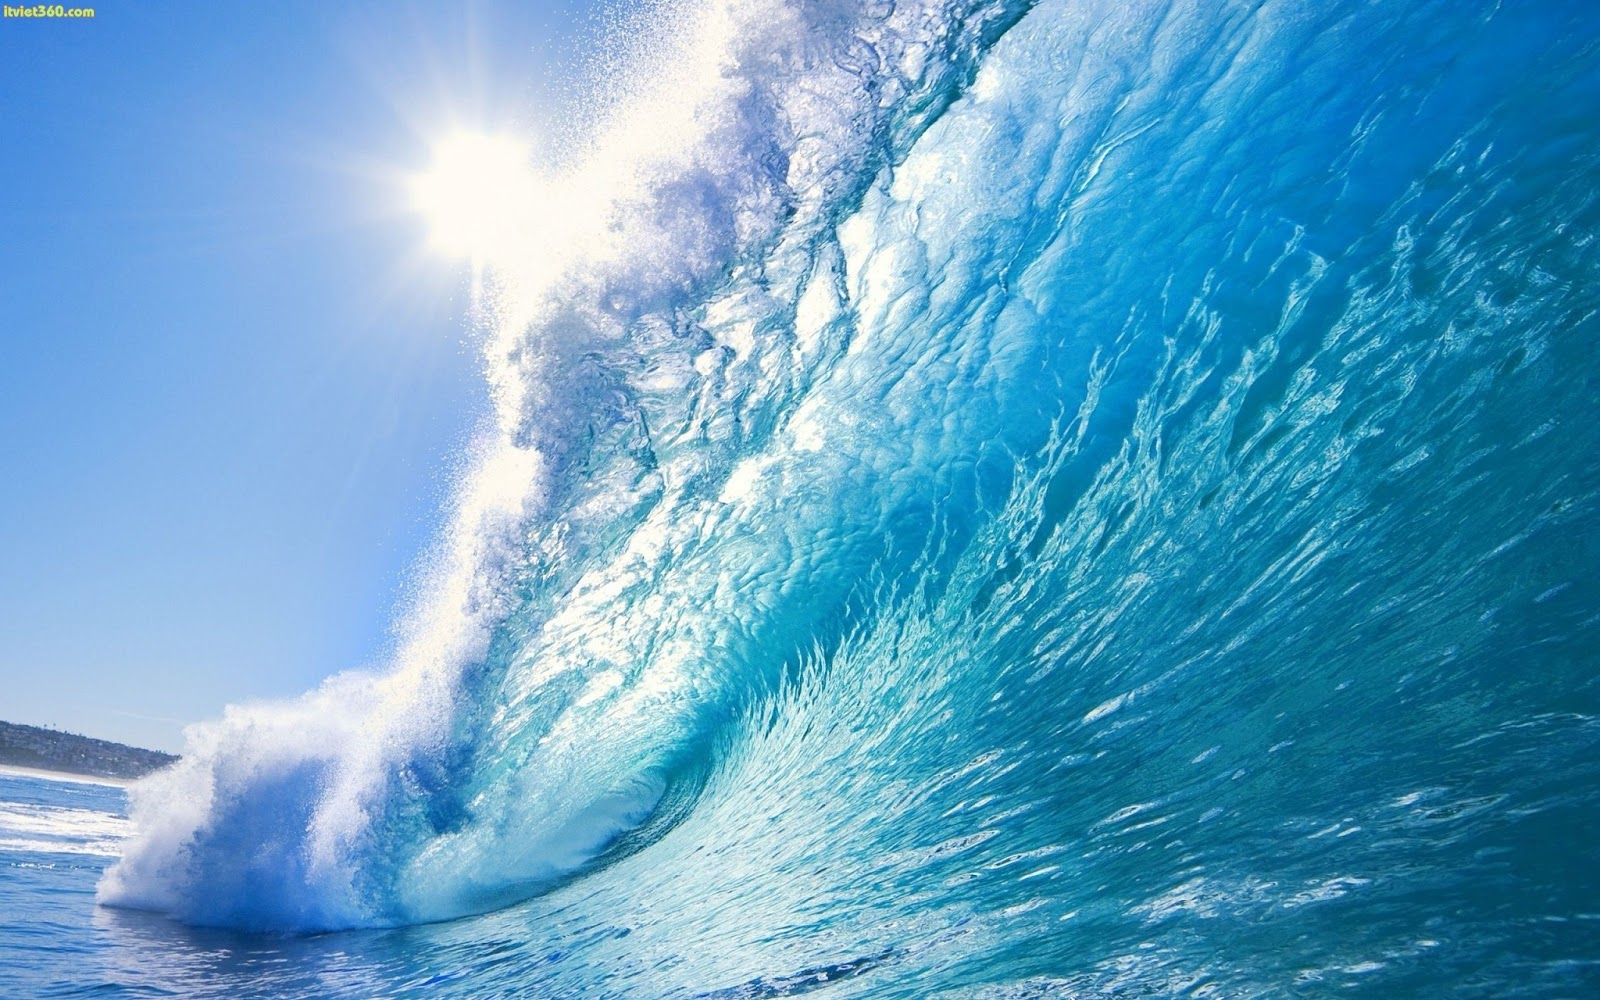 Bộ Sưu Tập hình ảnh sóng Cực Chất Full 4K với hơn 999+ hình ảnh sóng đẹp